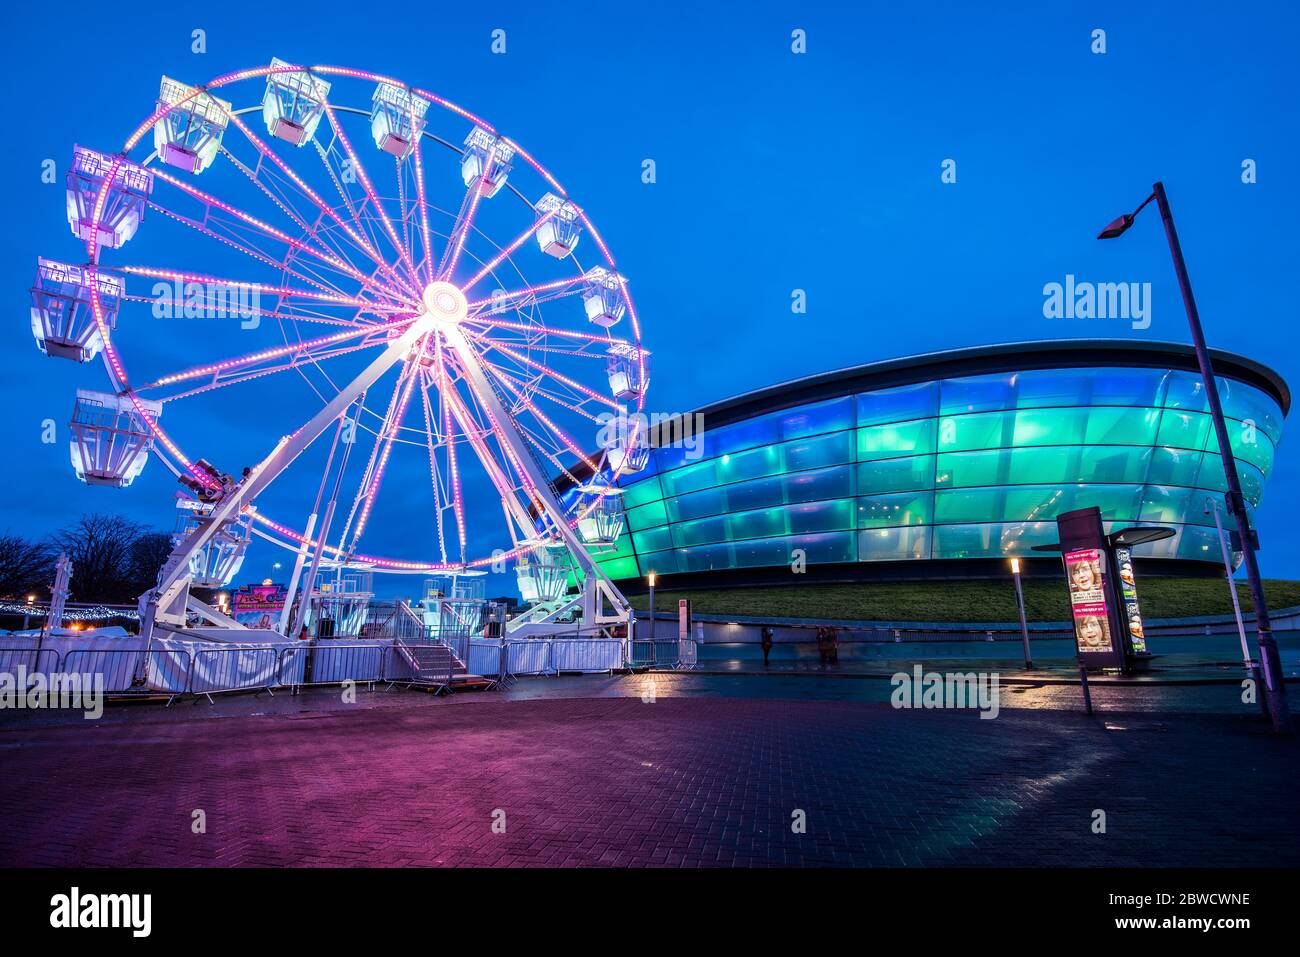 La SSE Hydro Glasgow di notte con la Big Wheel di Natale. Foto Stock